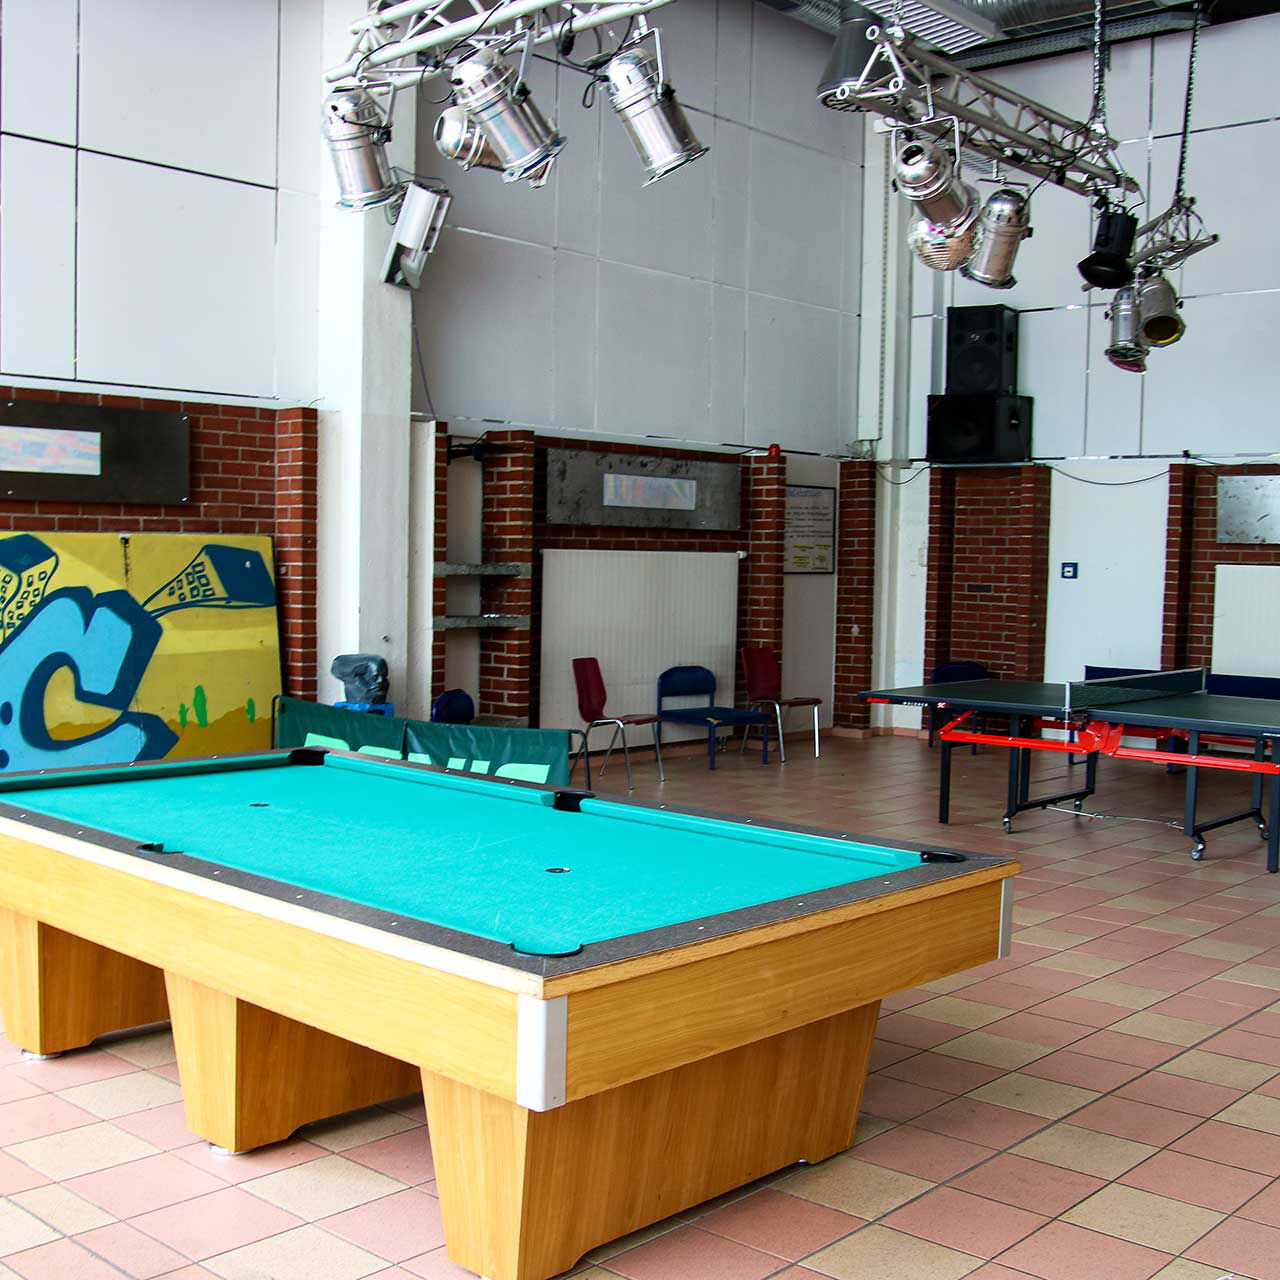 In der Spielhalle ist der Billardtisch im Vordergrund und die Tischtennisplatte im Hintergrund zu sehen.